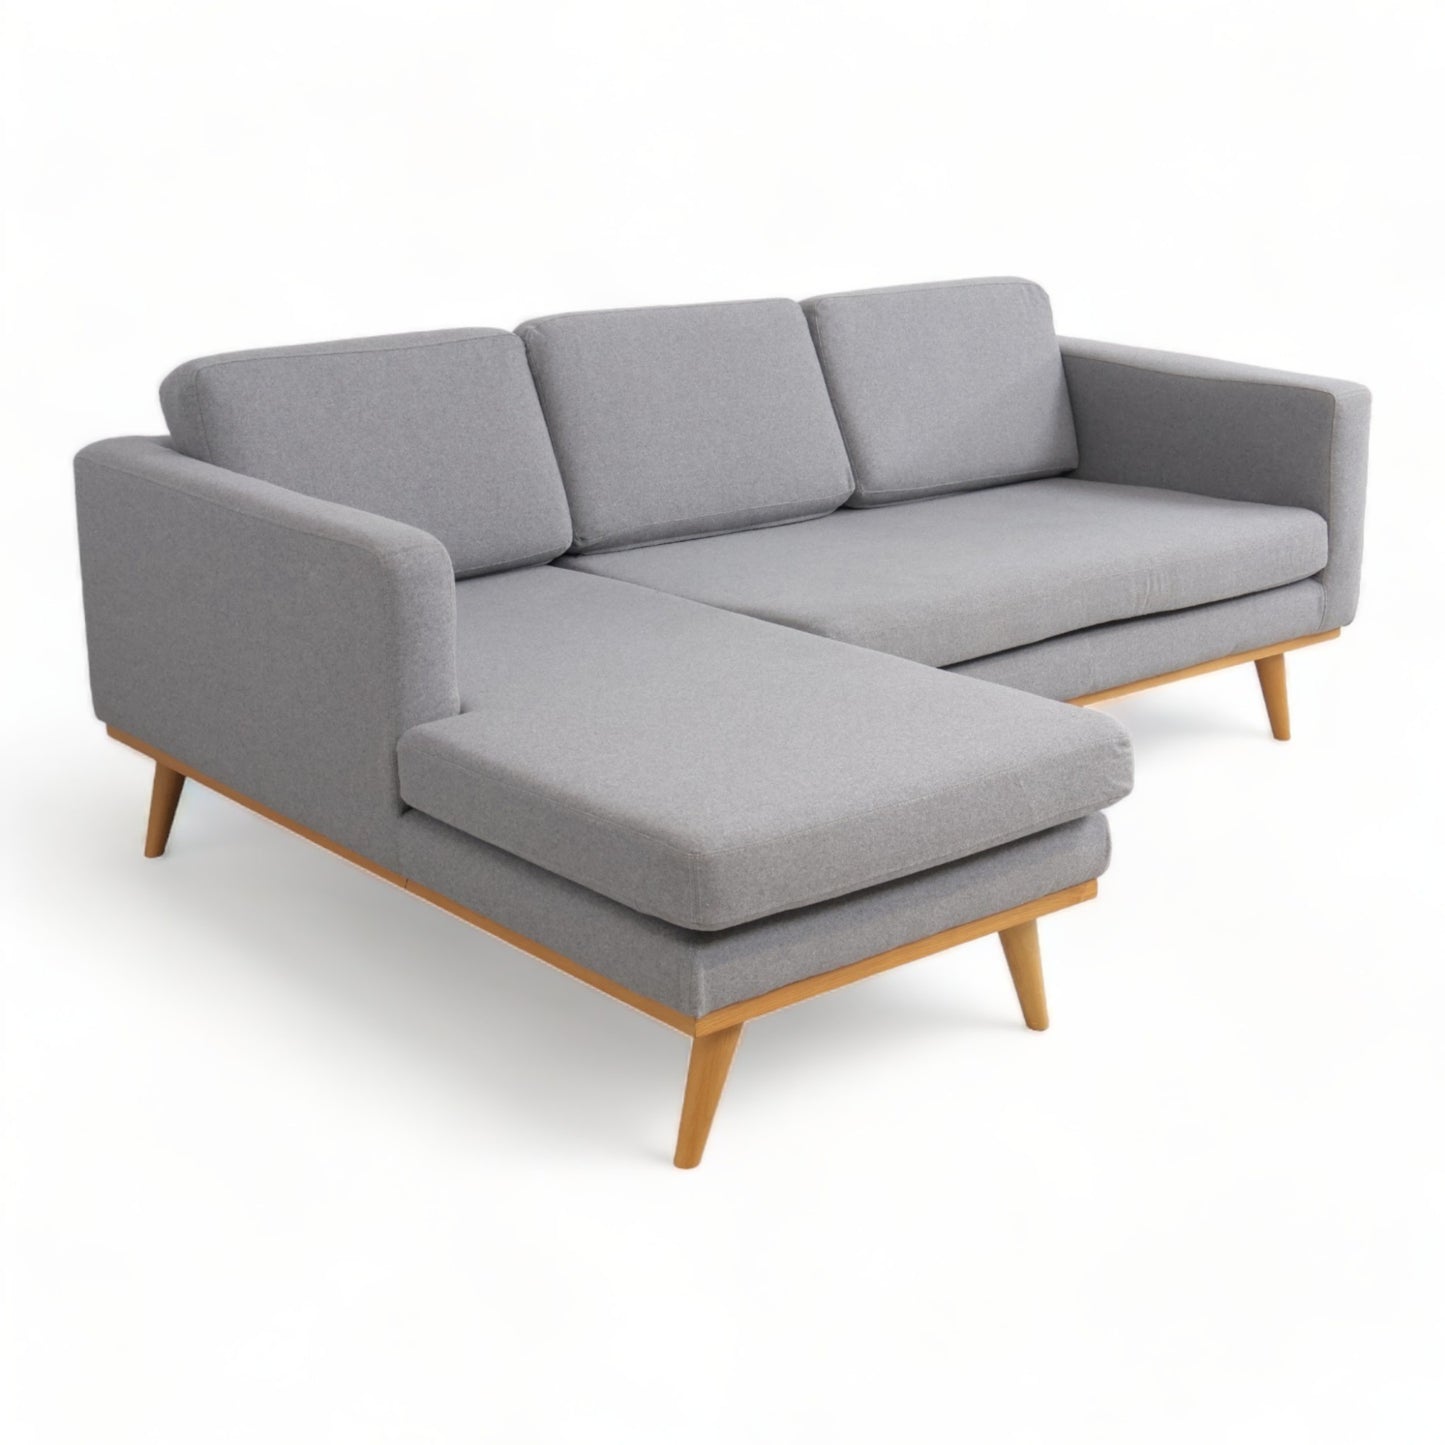 Nyrenset | Johan sofa med sjeselong fra SofaCompany